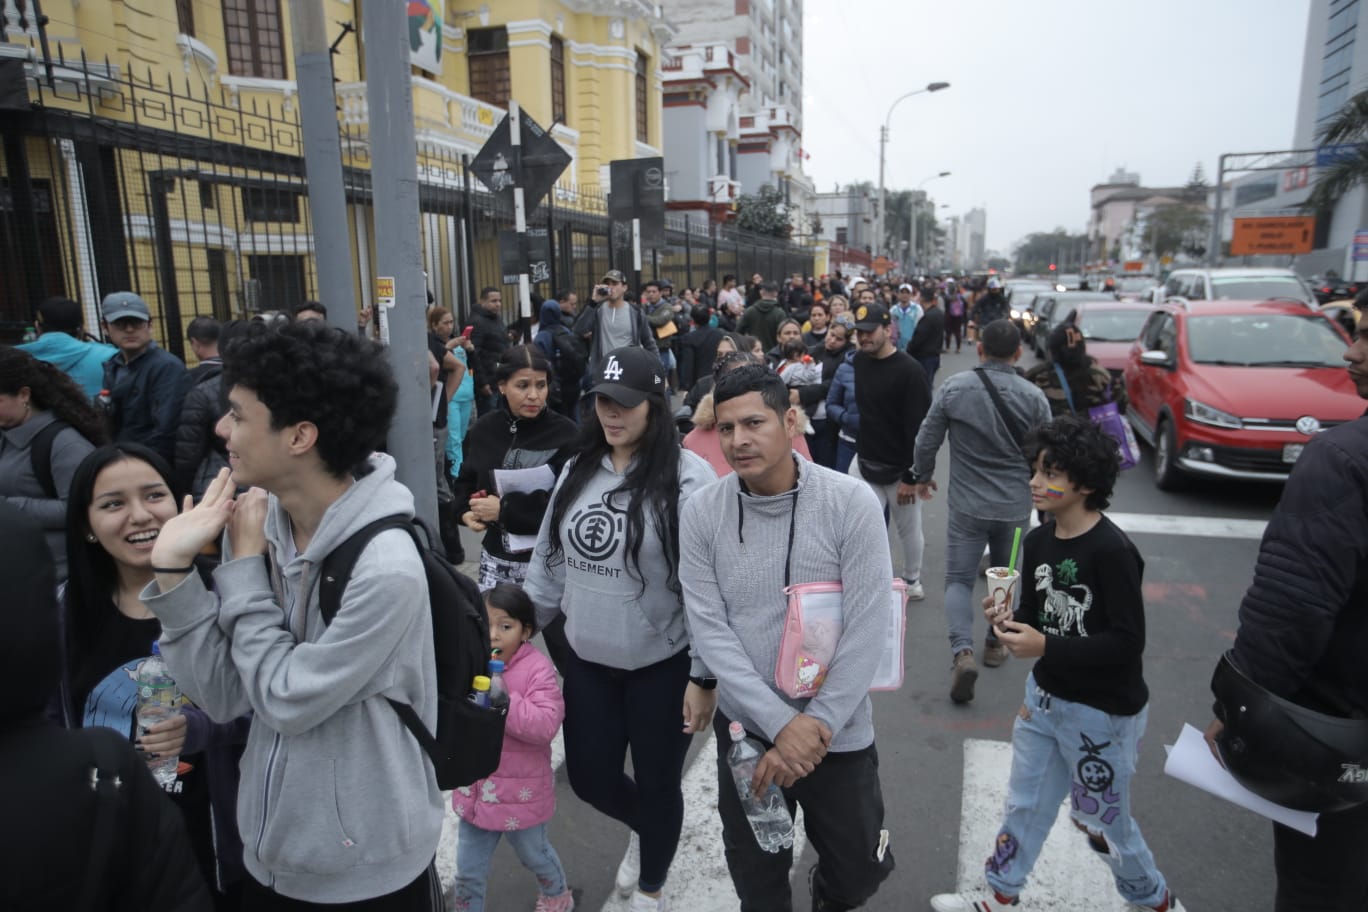 Venezolanos exigen sus pasaportes en las puertas de su embajada en Lima. (Foto Javier Zapata)